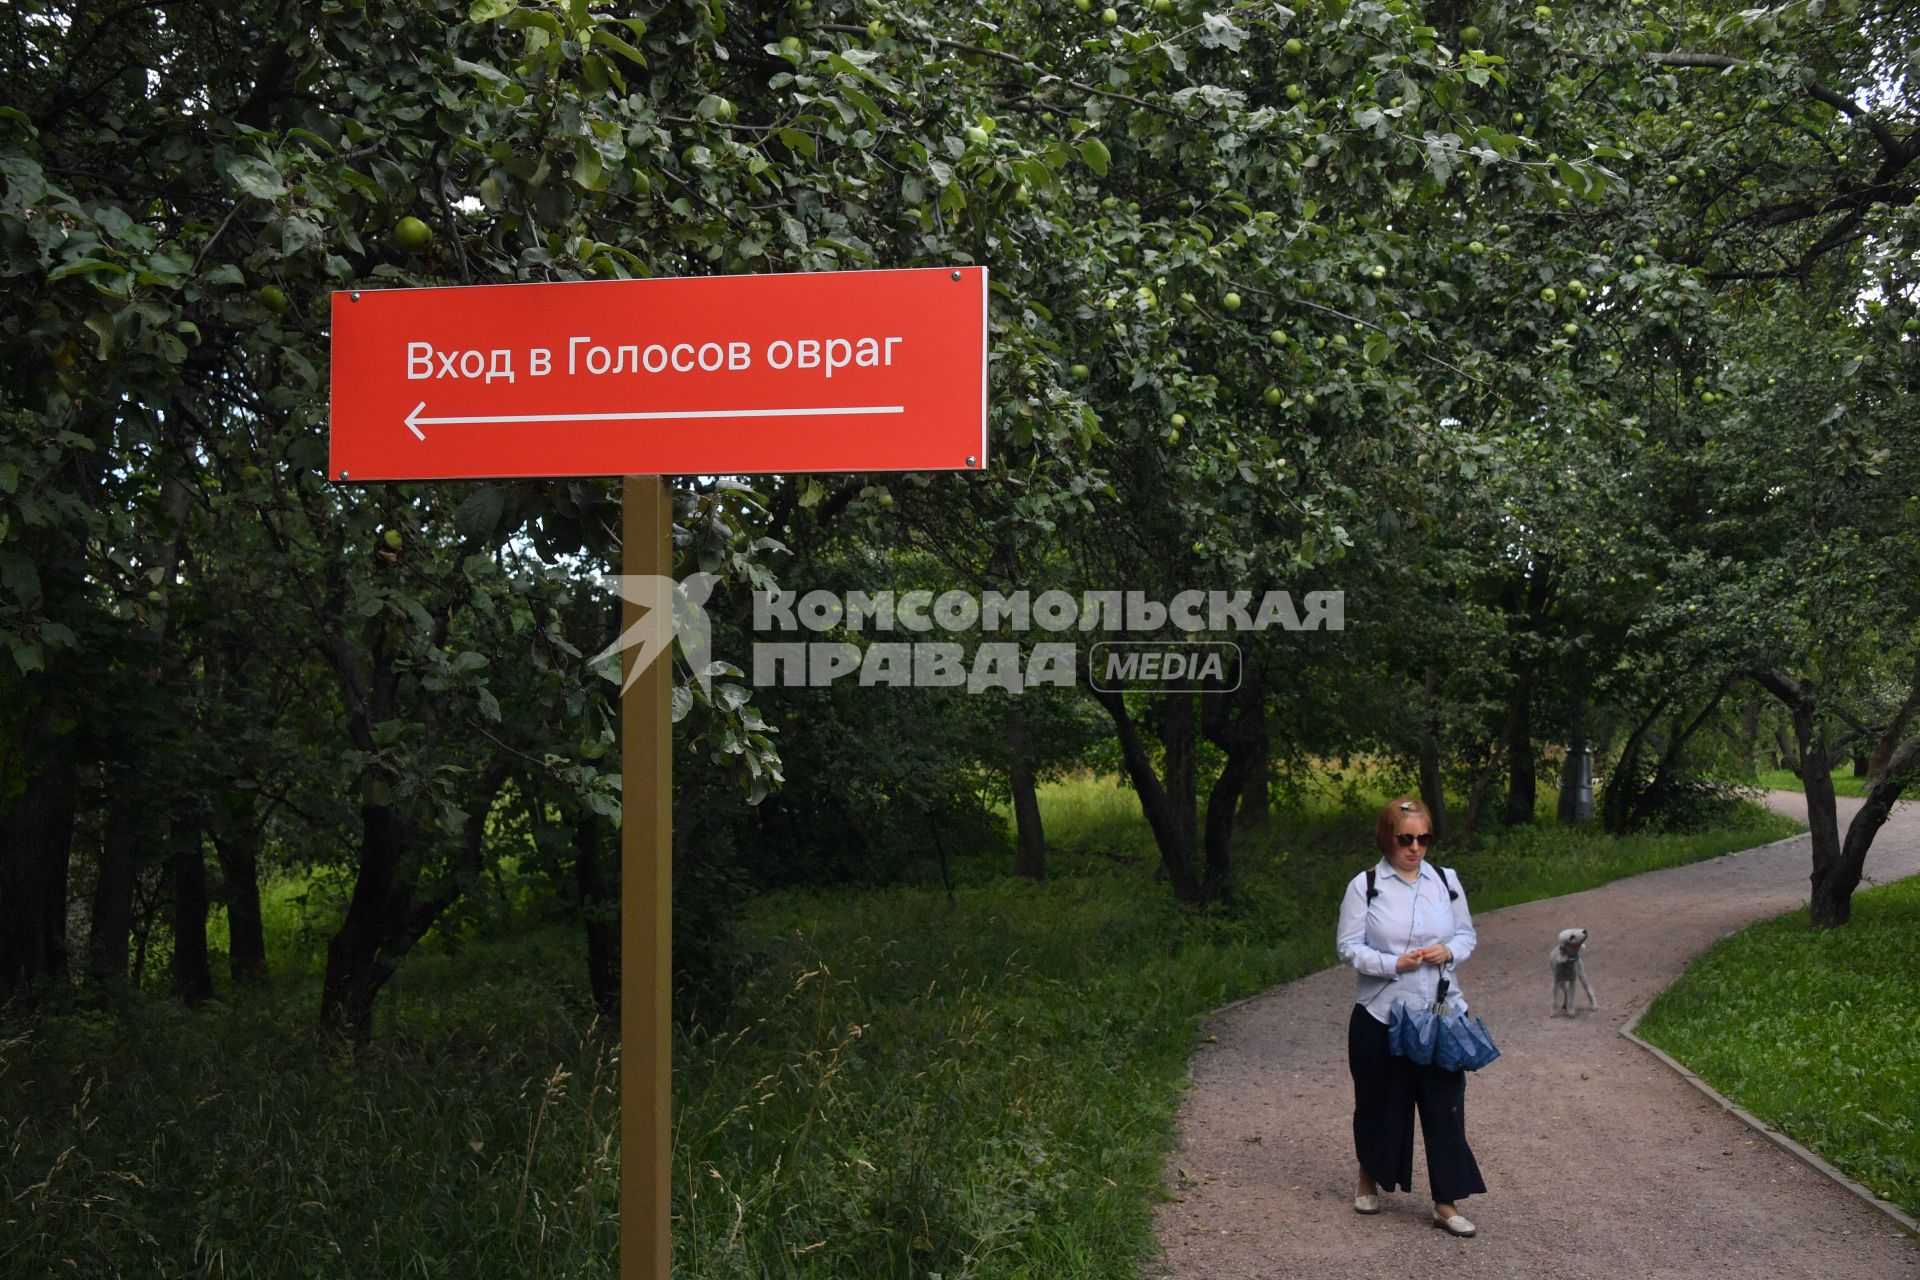 Москва. Женщина с собакой гуляет у входа в Голосов овраг  парка Коломенское.